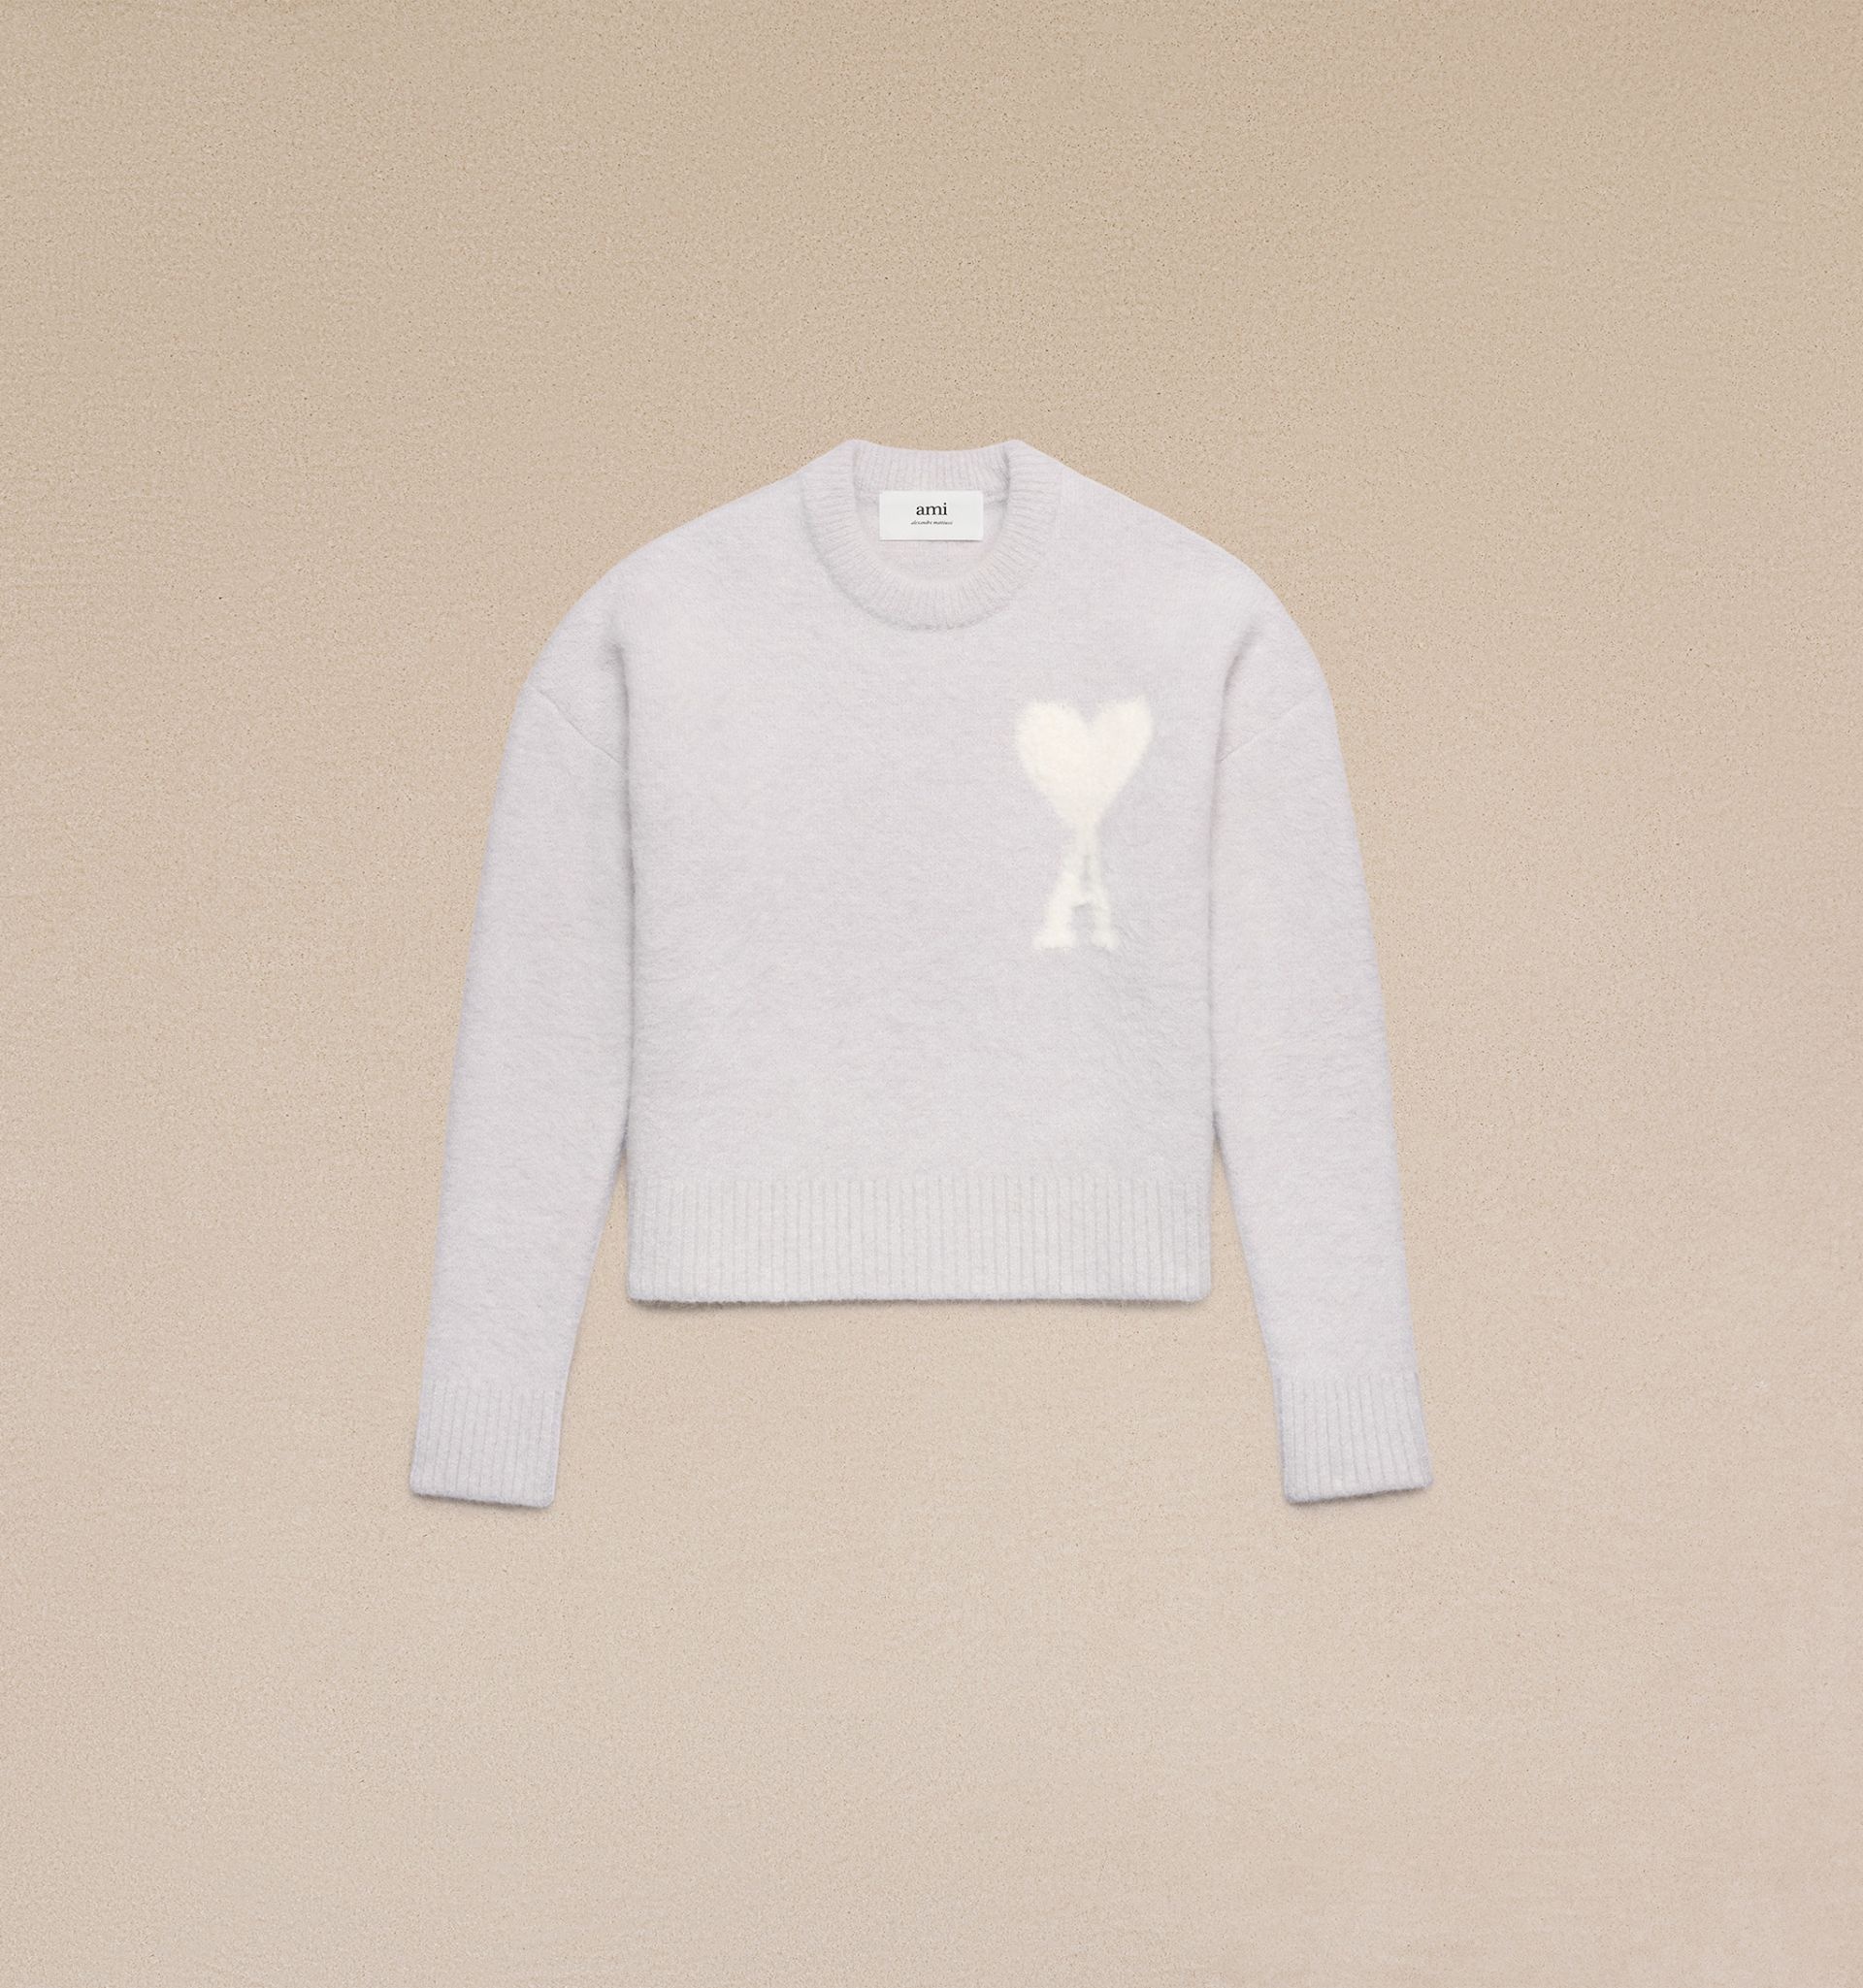 Off-White Ami De Coeur Sweater - 7